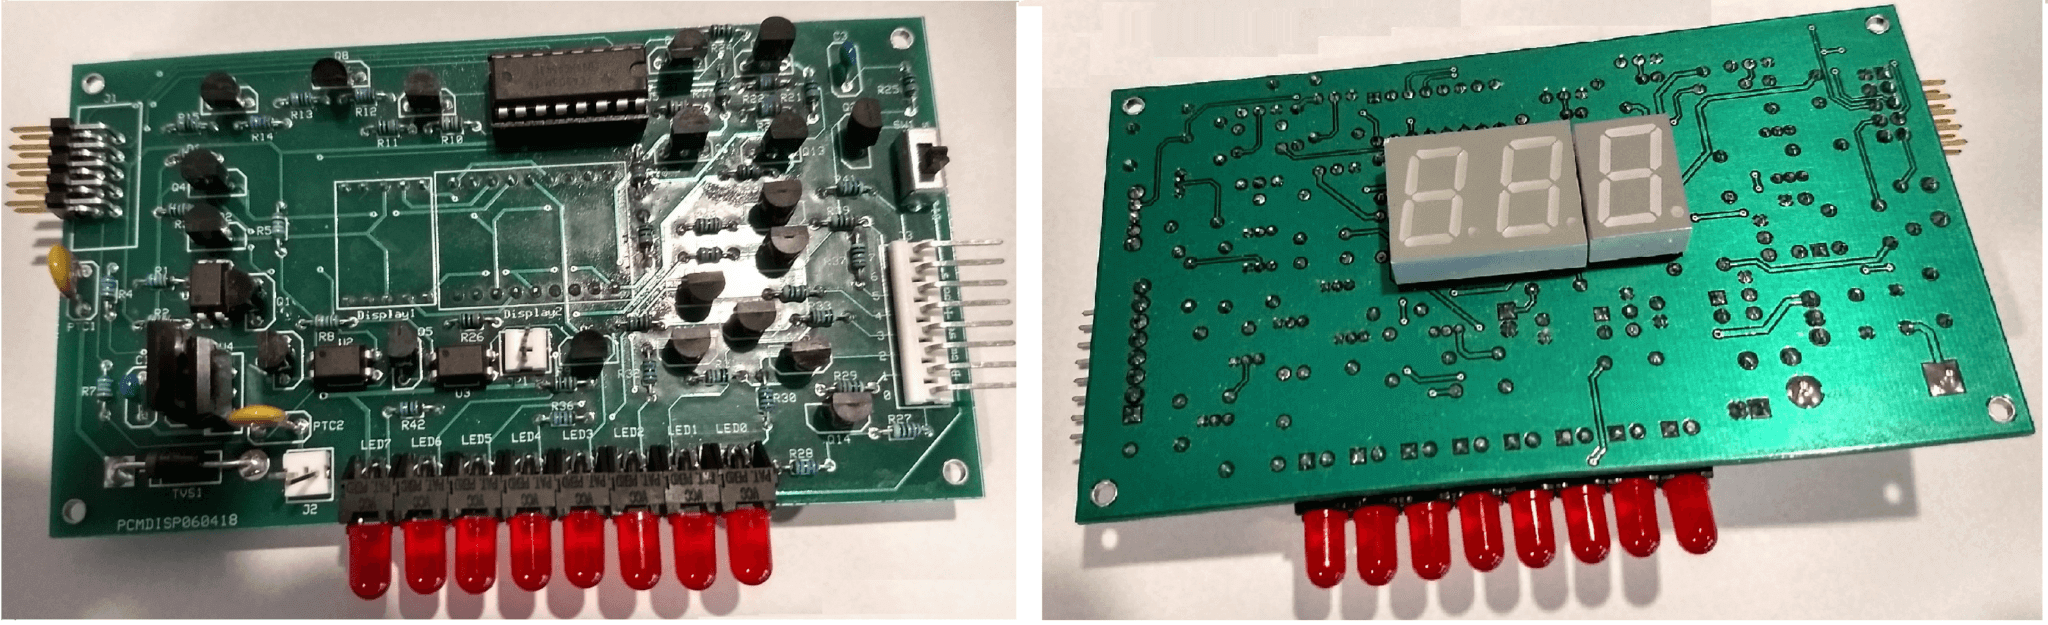 Microcontroller Display Module